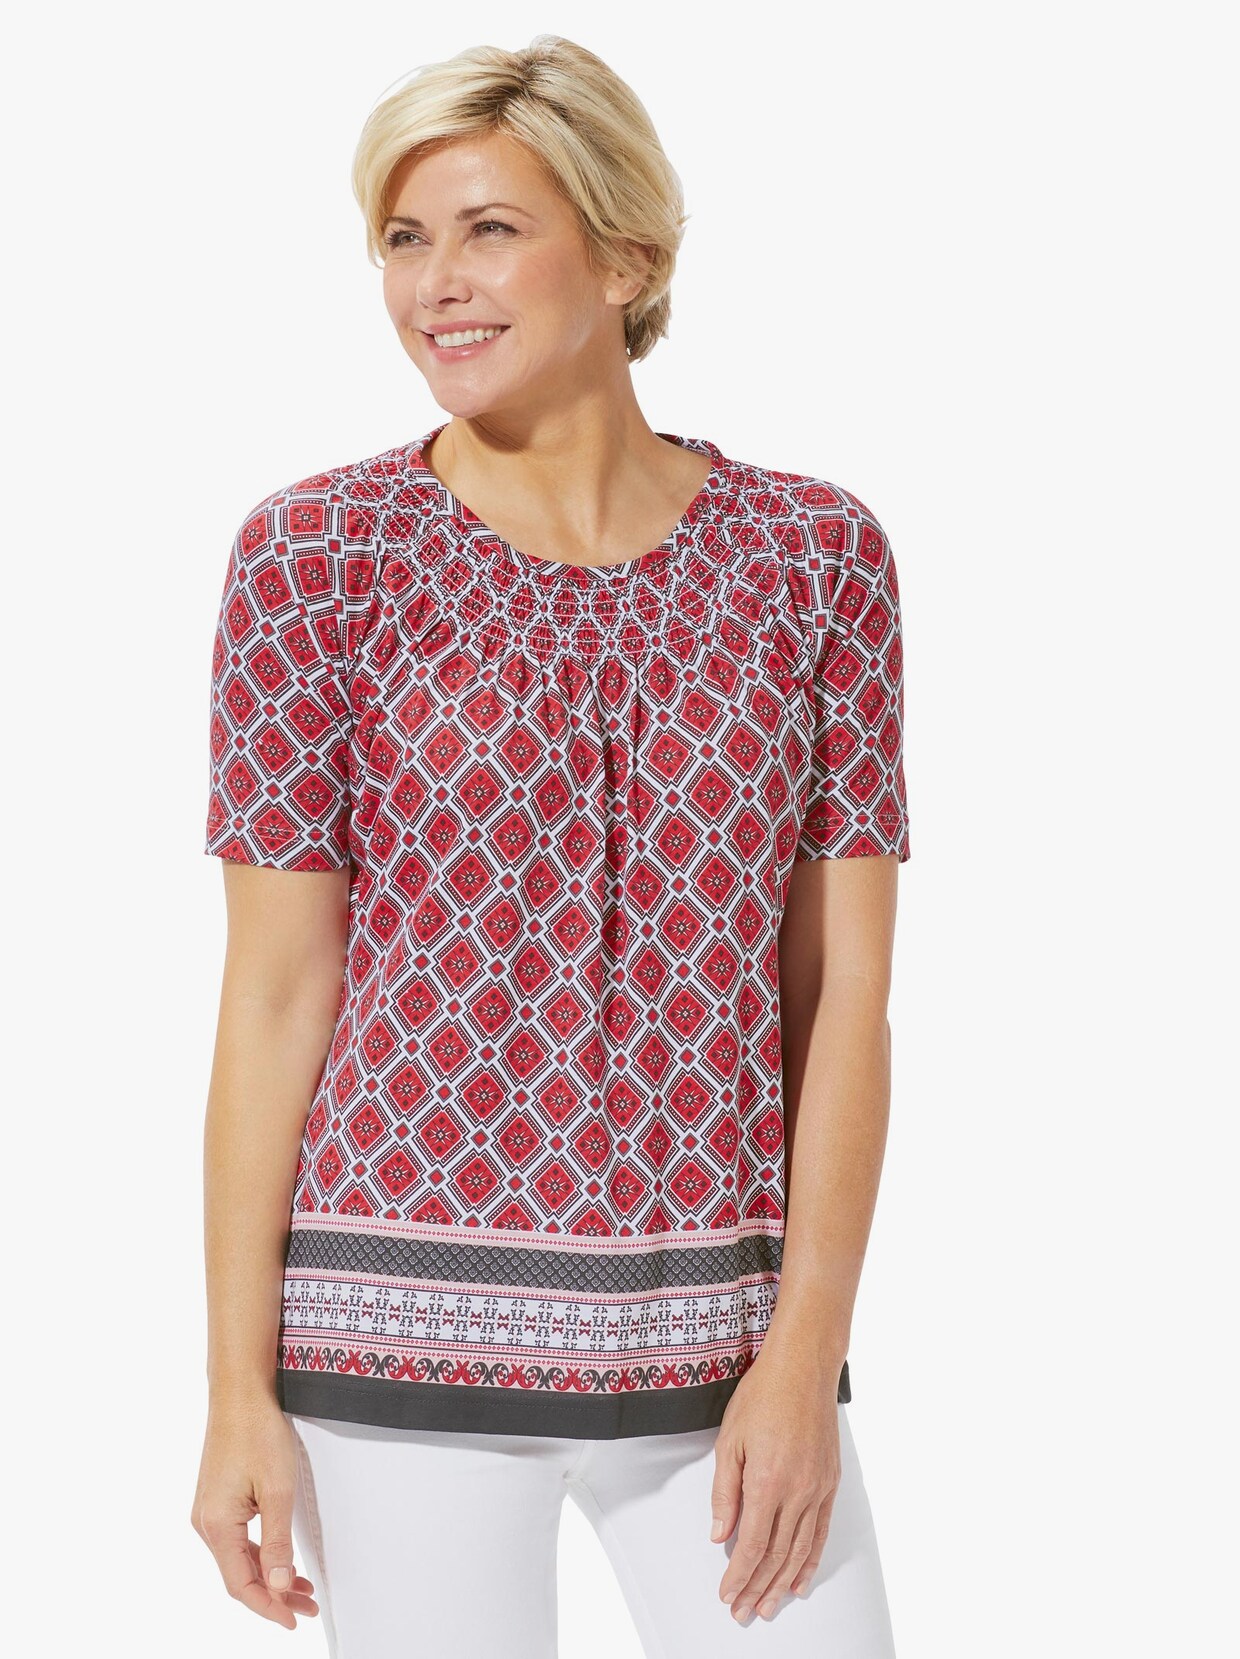 Tričko s krátkým rukávem - korálová-vzor